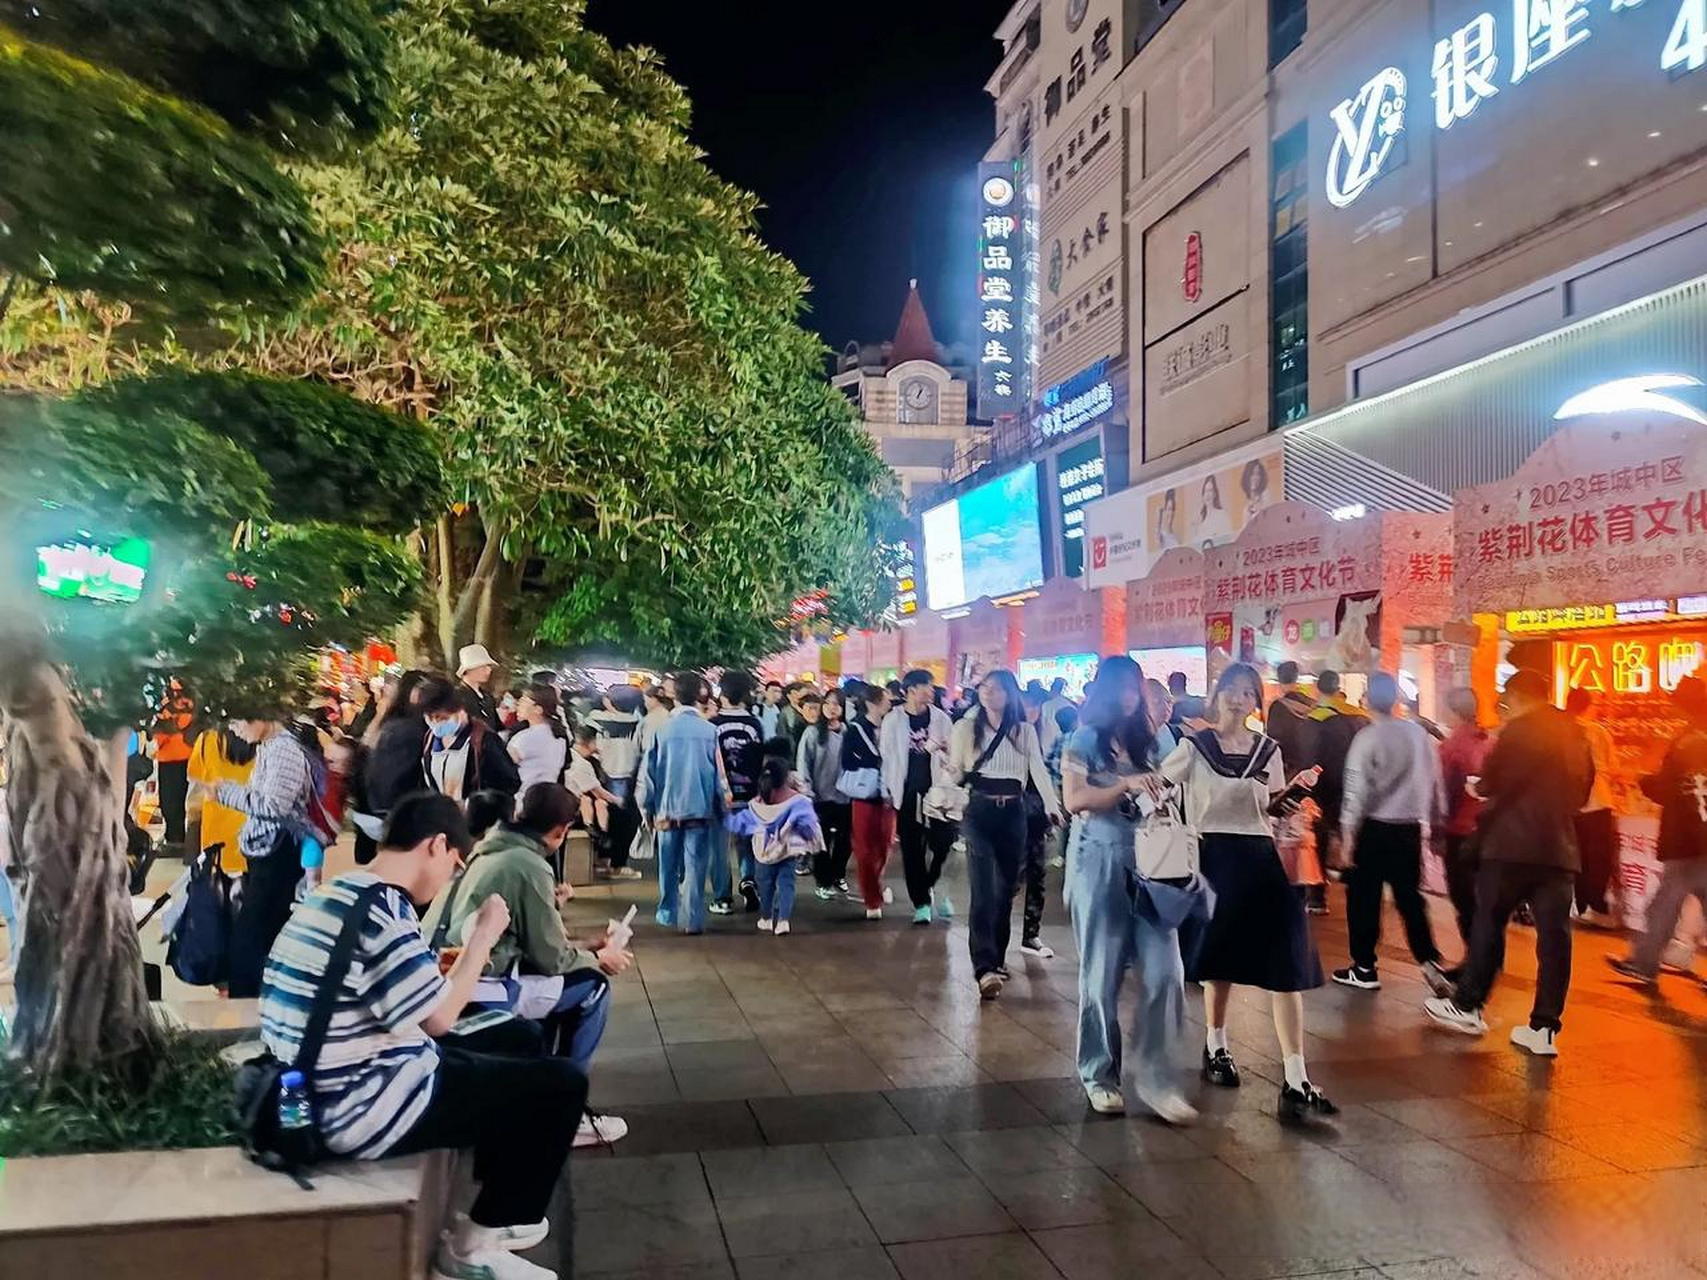 五一假期首日,柳州今晚五星商业步行街人,从,众,热闹非凡柳州头条